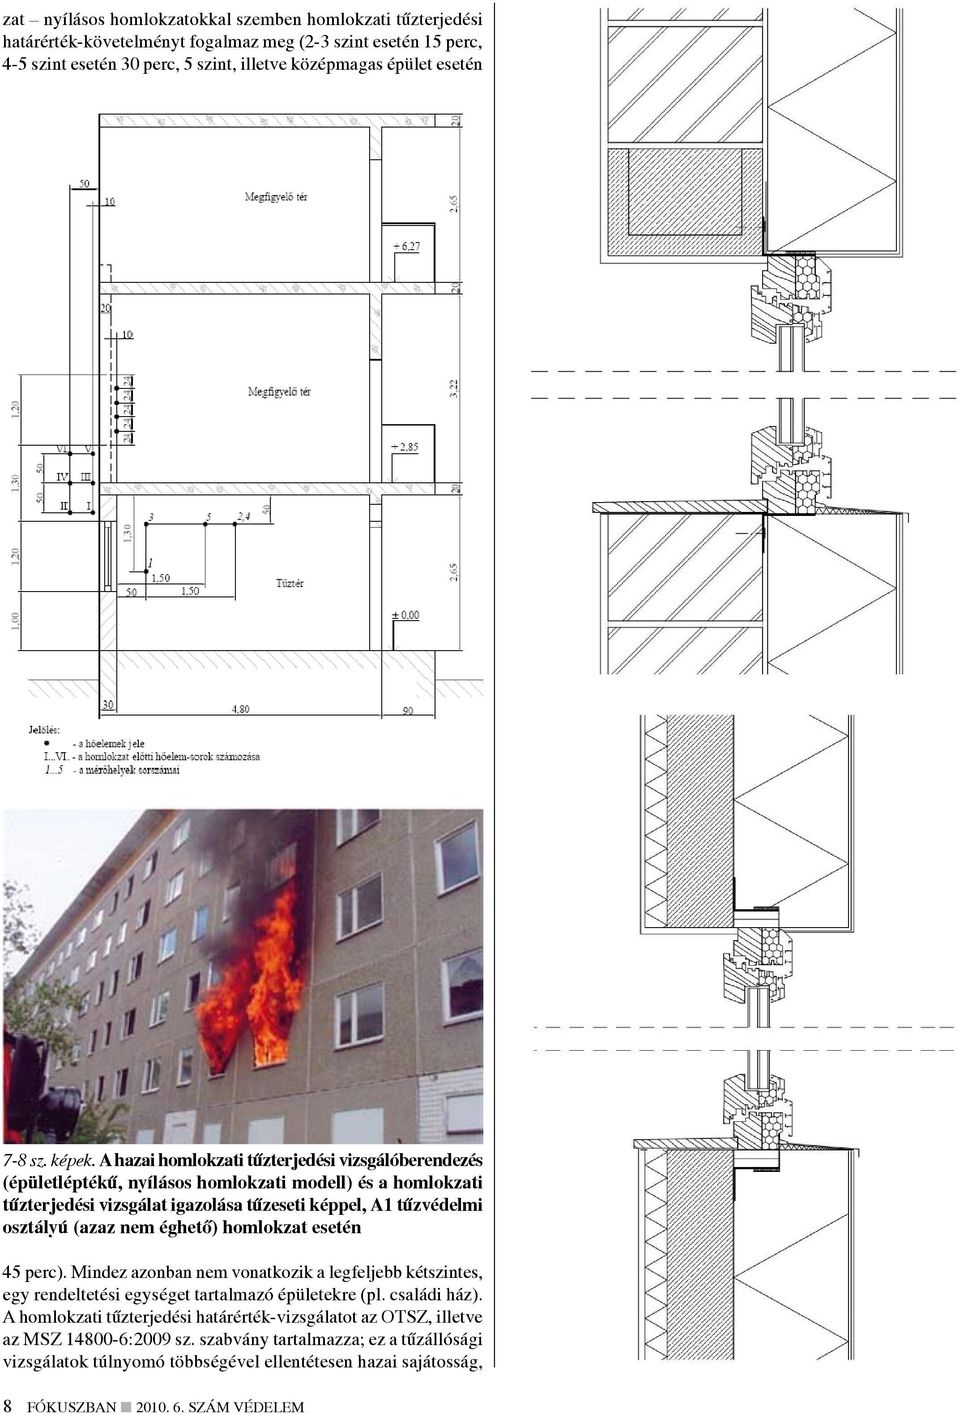 A hazai homlokzati tűzterjedési vizsgálóberendezés (épületléptékű, nyílásos homlokzati modell) és a homlokzati tűzterjedési vizsgálat igazolása tűzeseti képpel, A1 tűzvédelmi osztályú (azaz nem